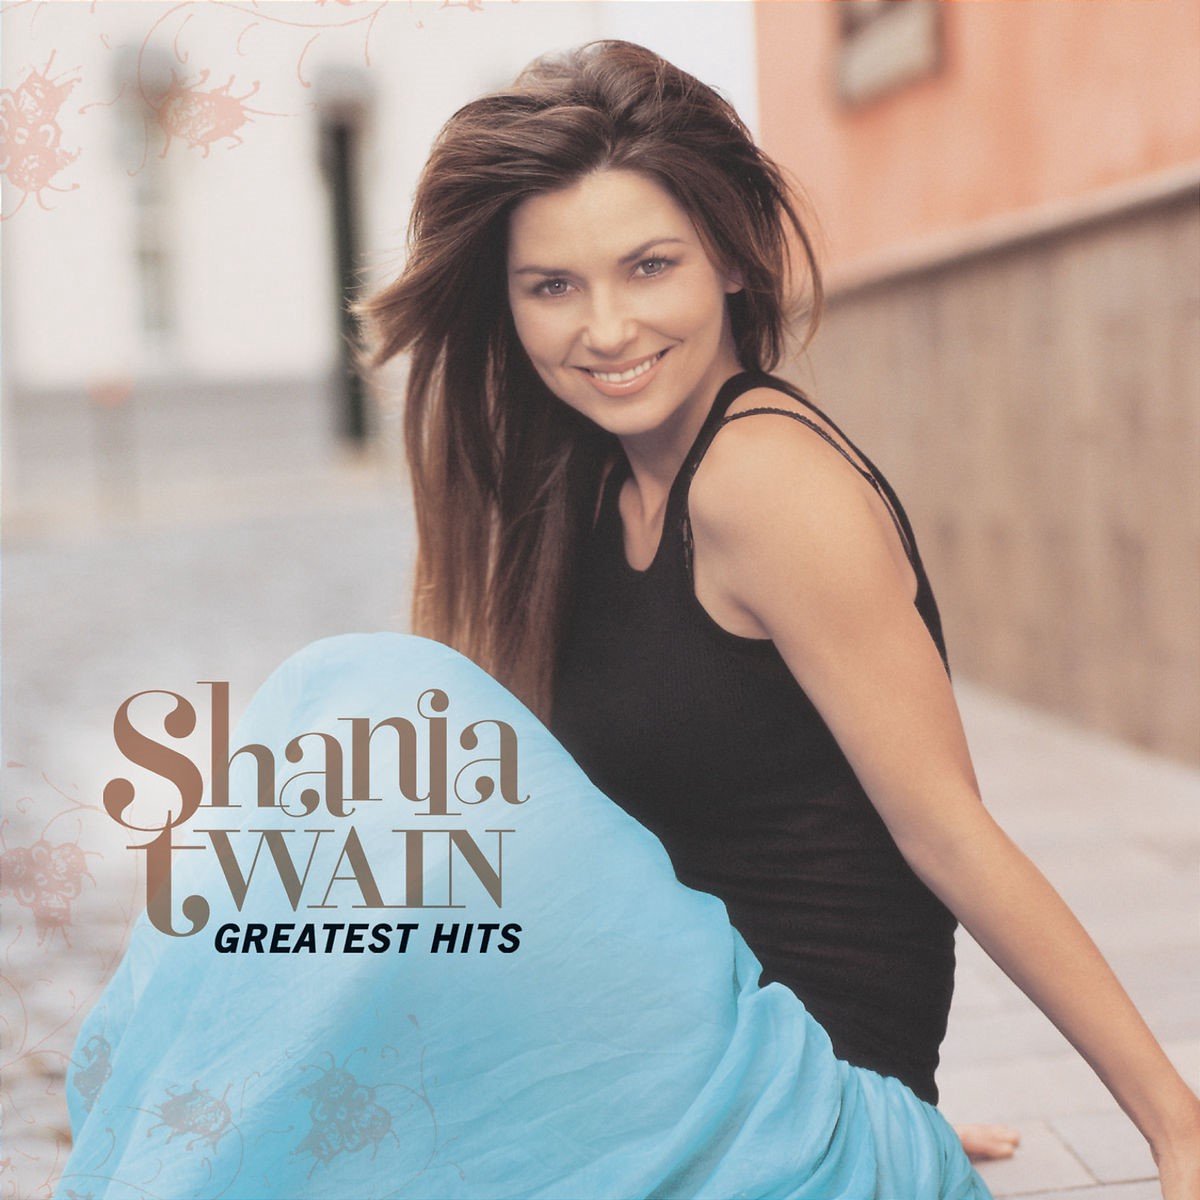 Shania Twain - Greatest Hits (CD) - Shania Twain